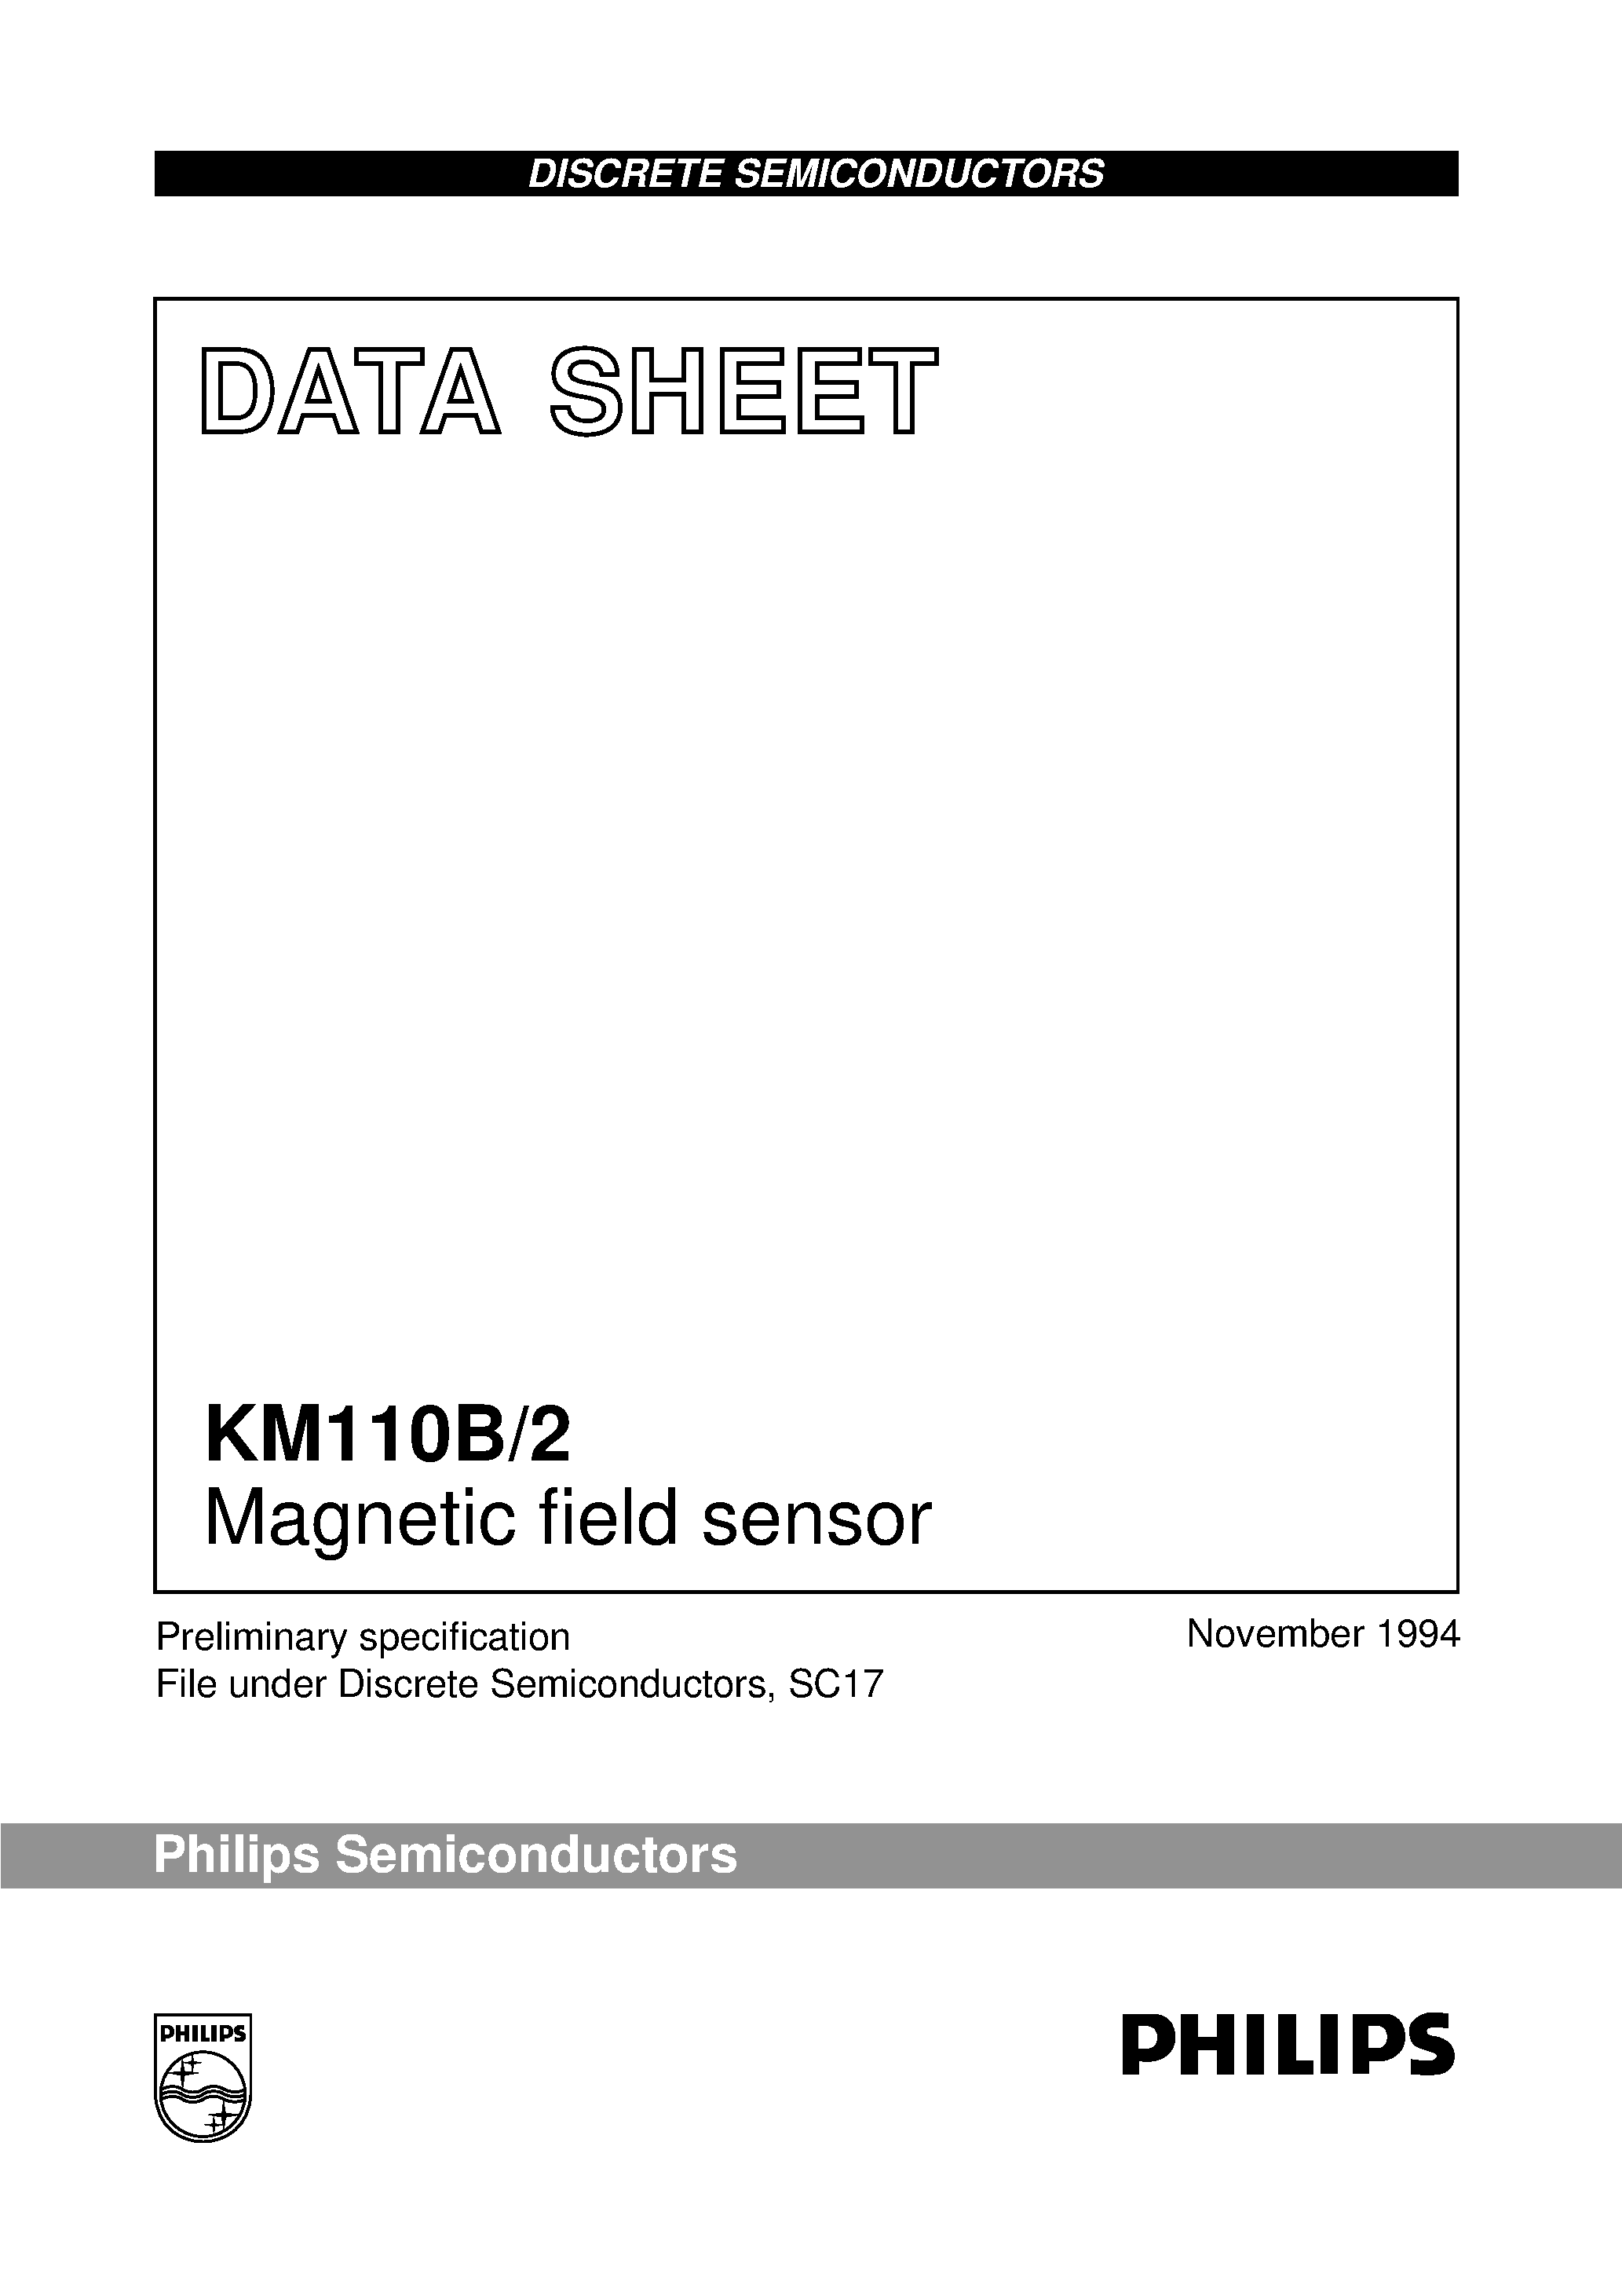 Даташит KM110B - Magnetic field sensor страница 1